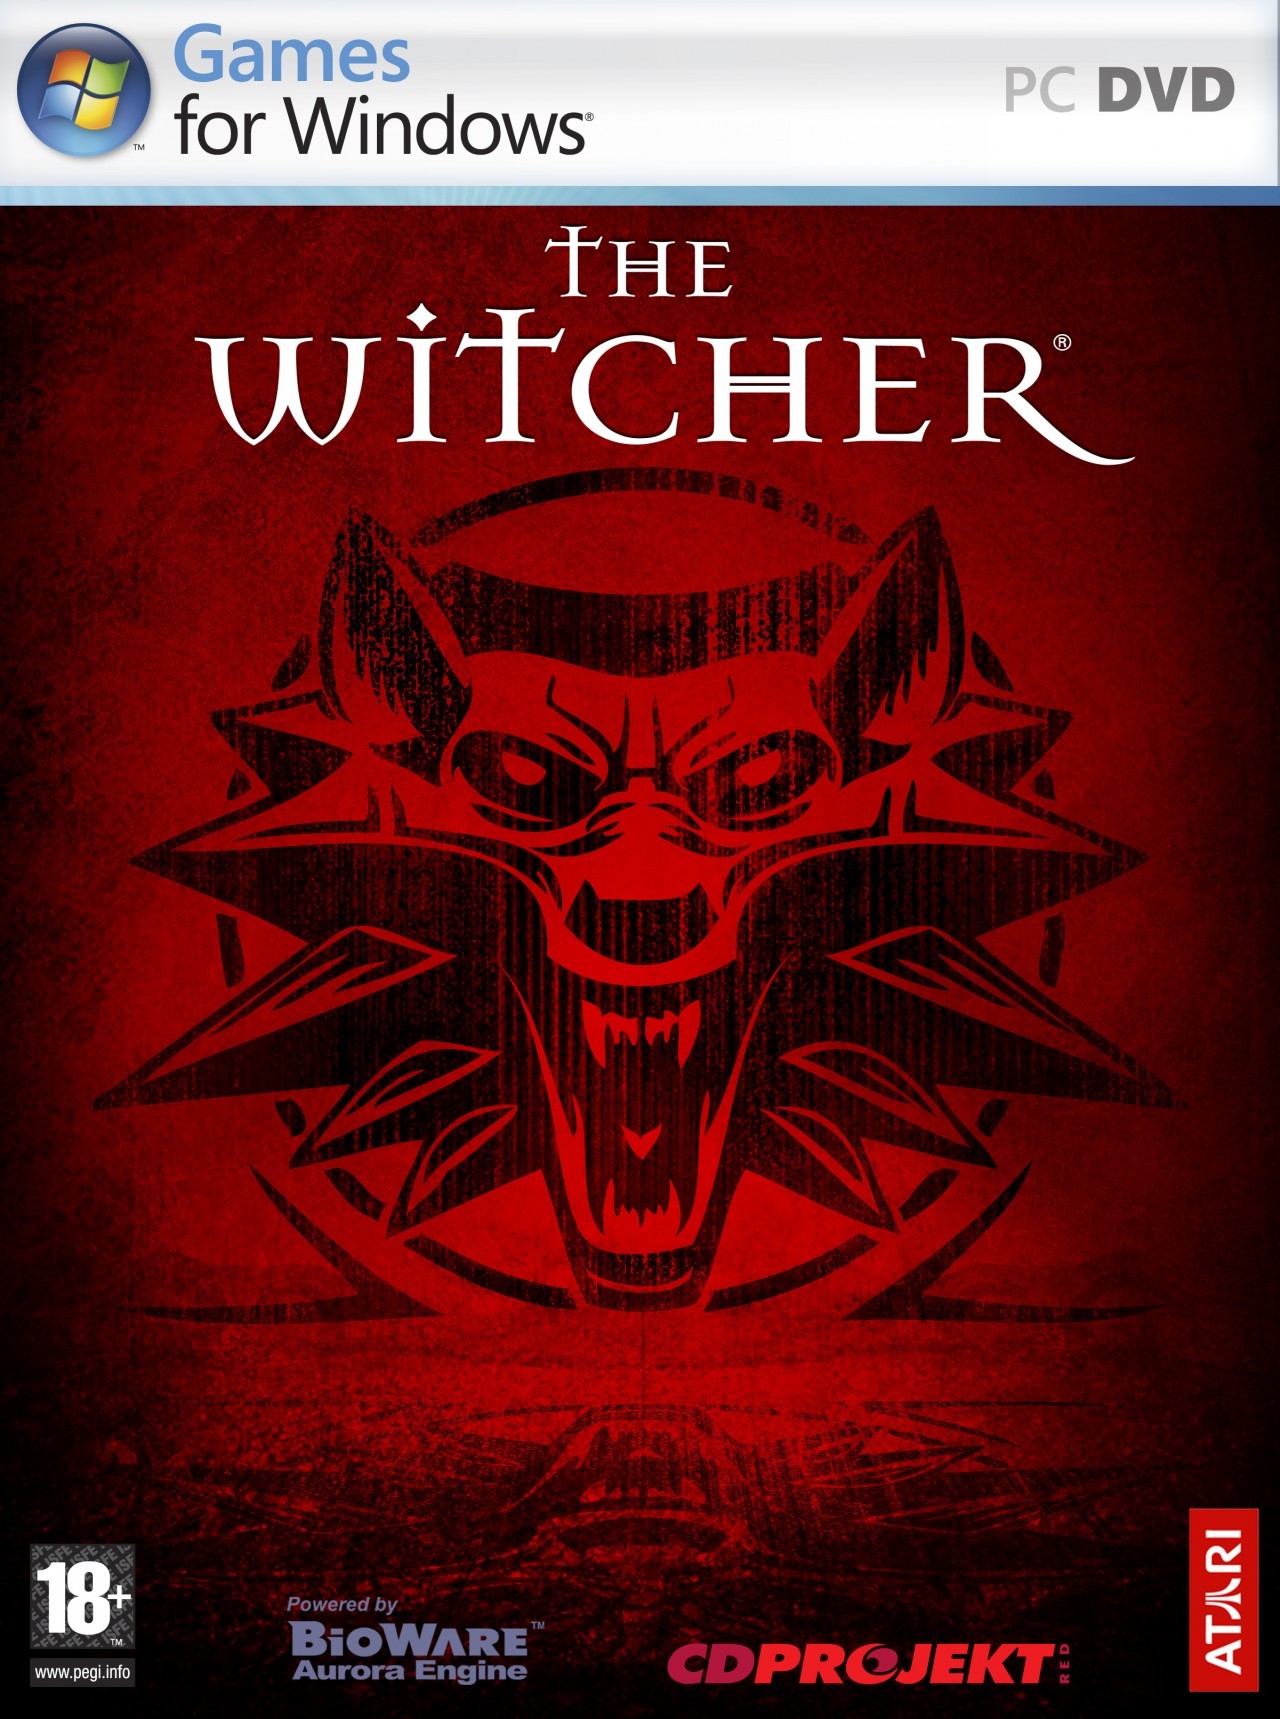 Veja os requisitos de The Witcher III: Wild Hunt, o jogo que